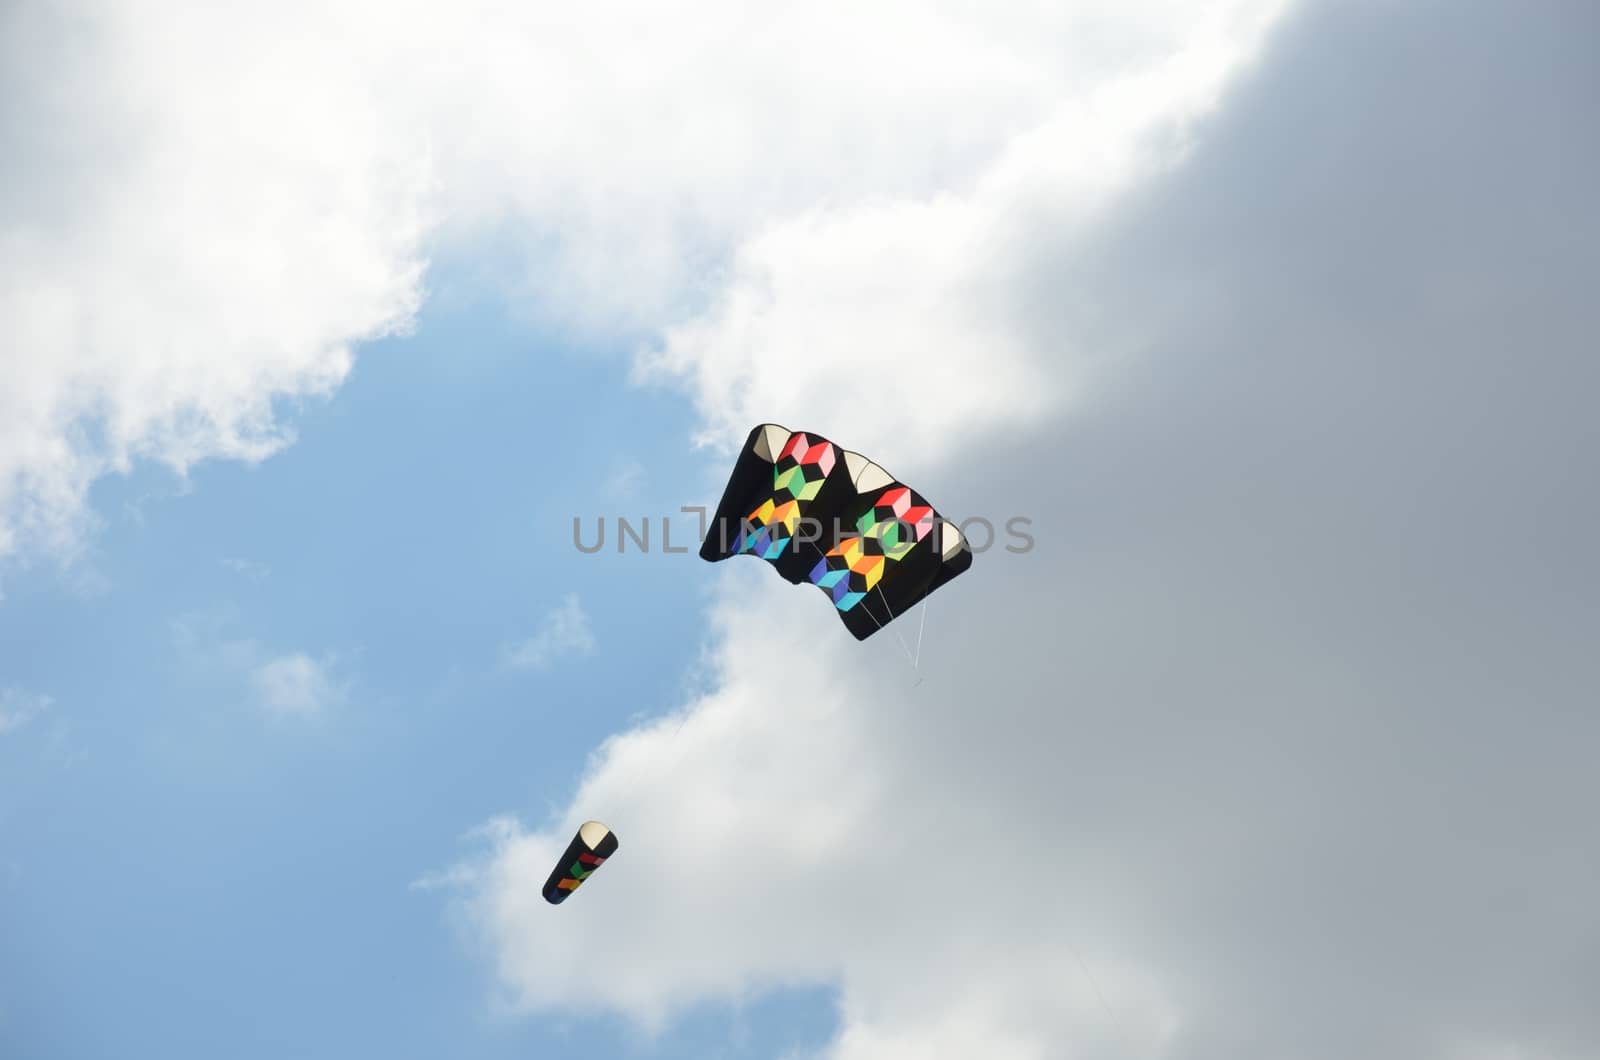 dark kite by pauws99